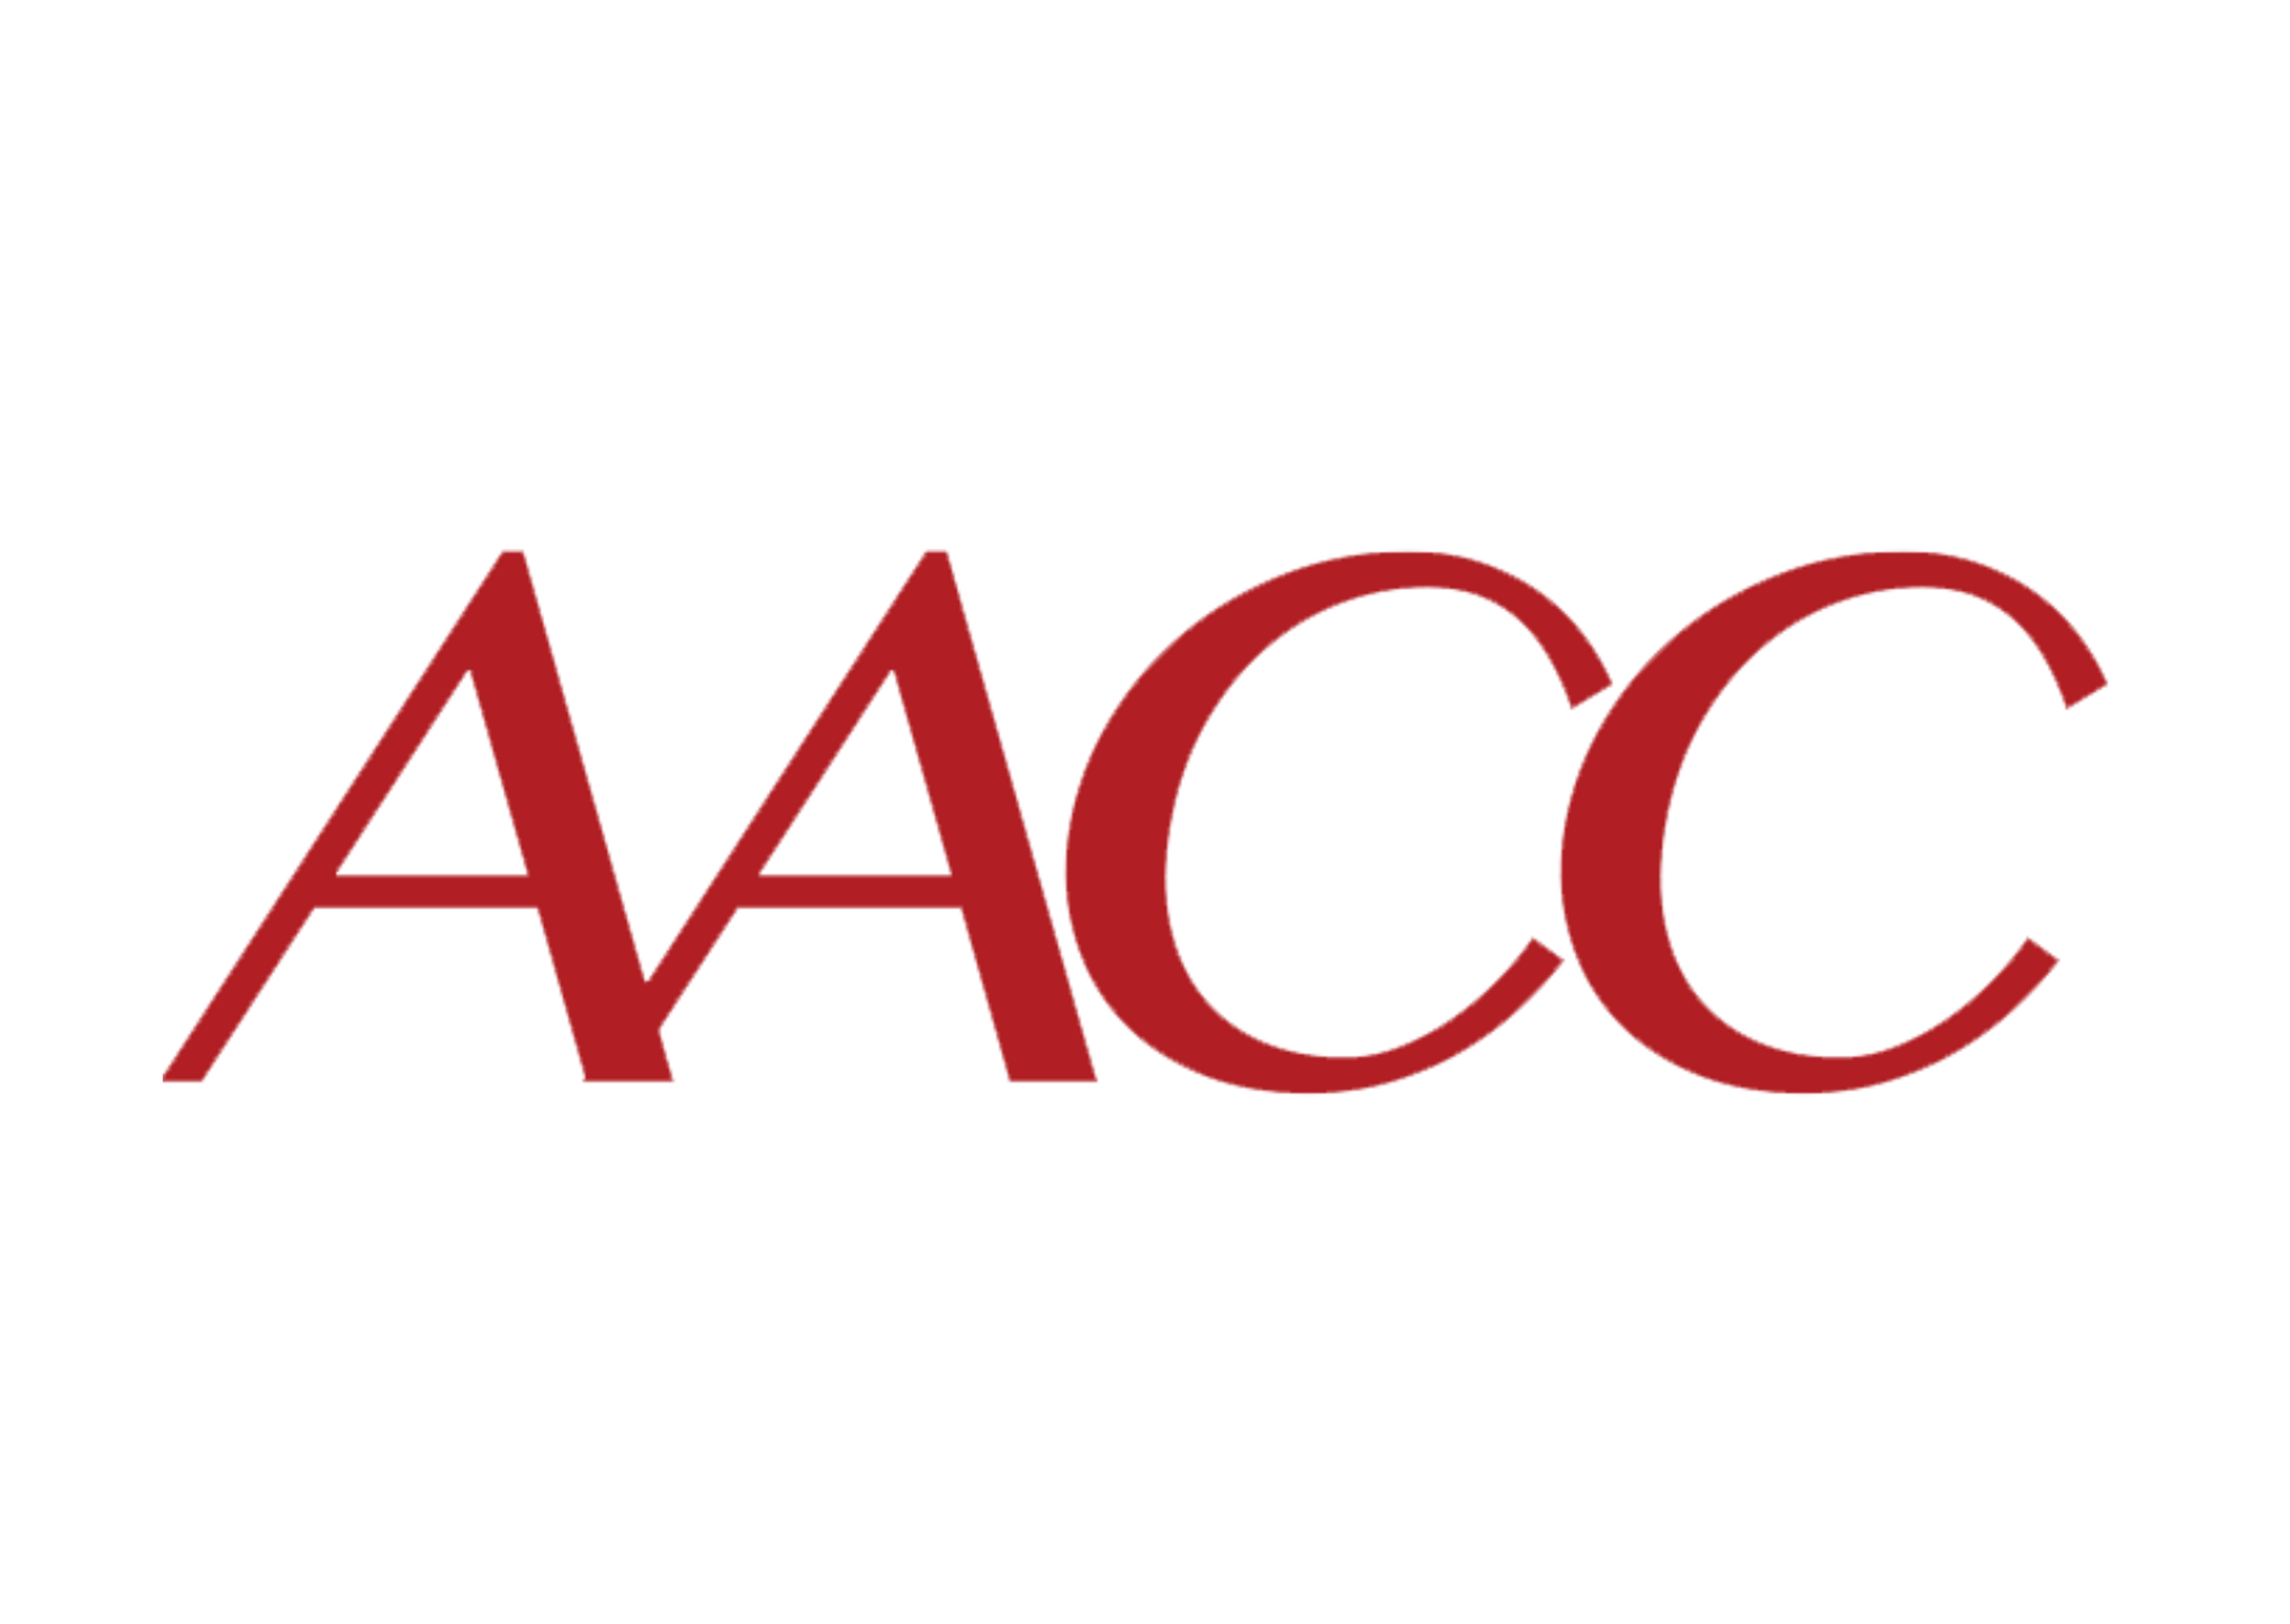 AACC logo